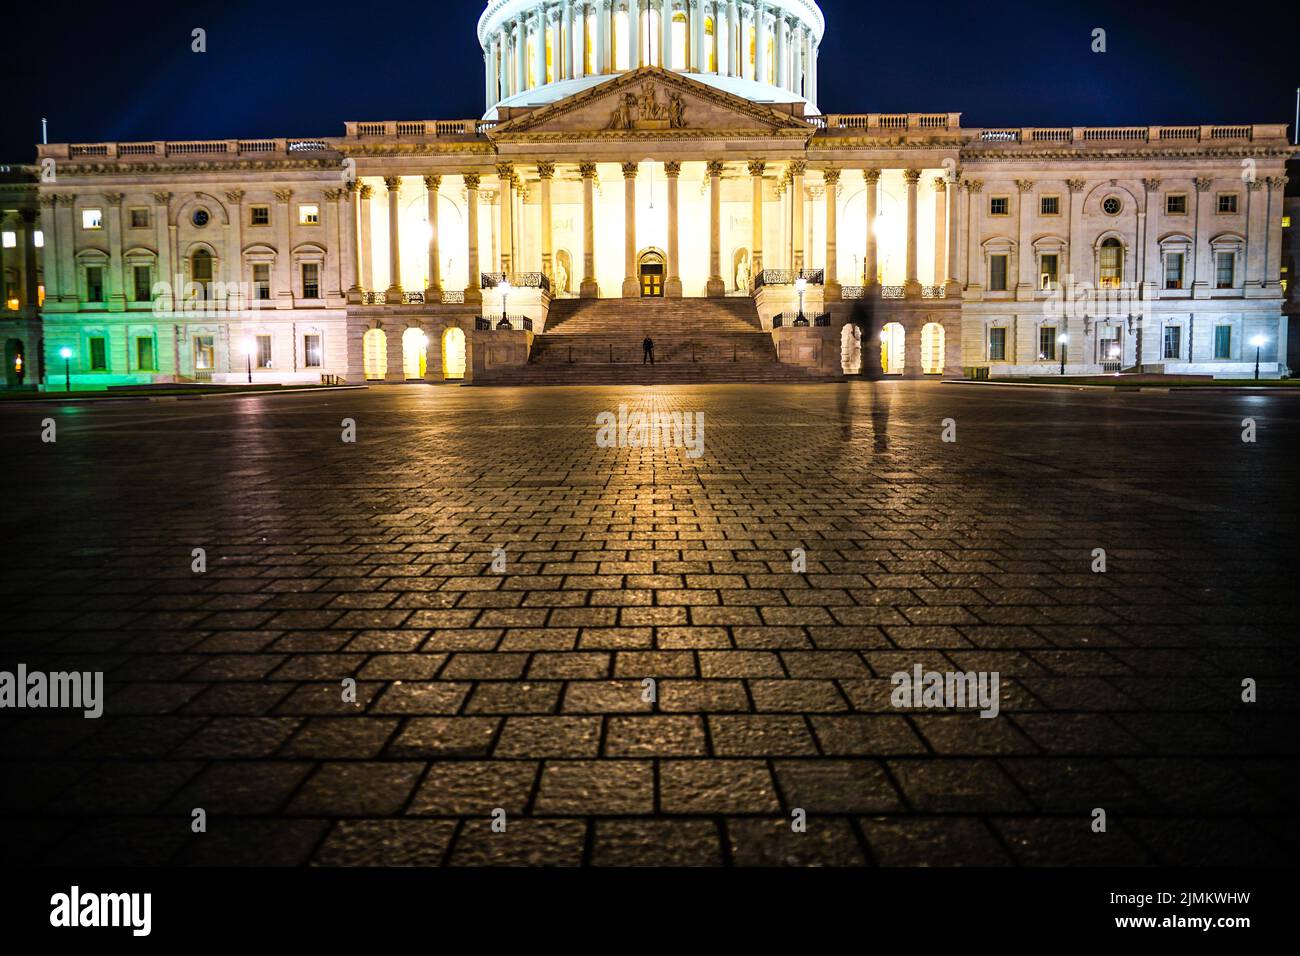 United States Capitol (United States Capitol) Stock Photo